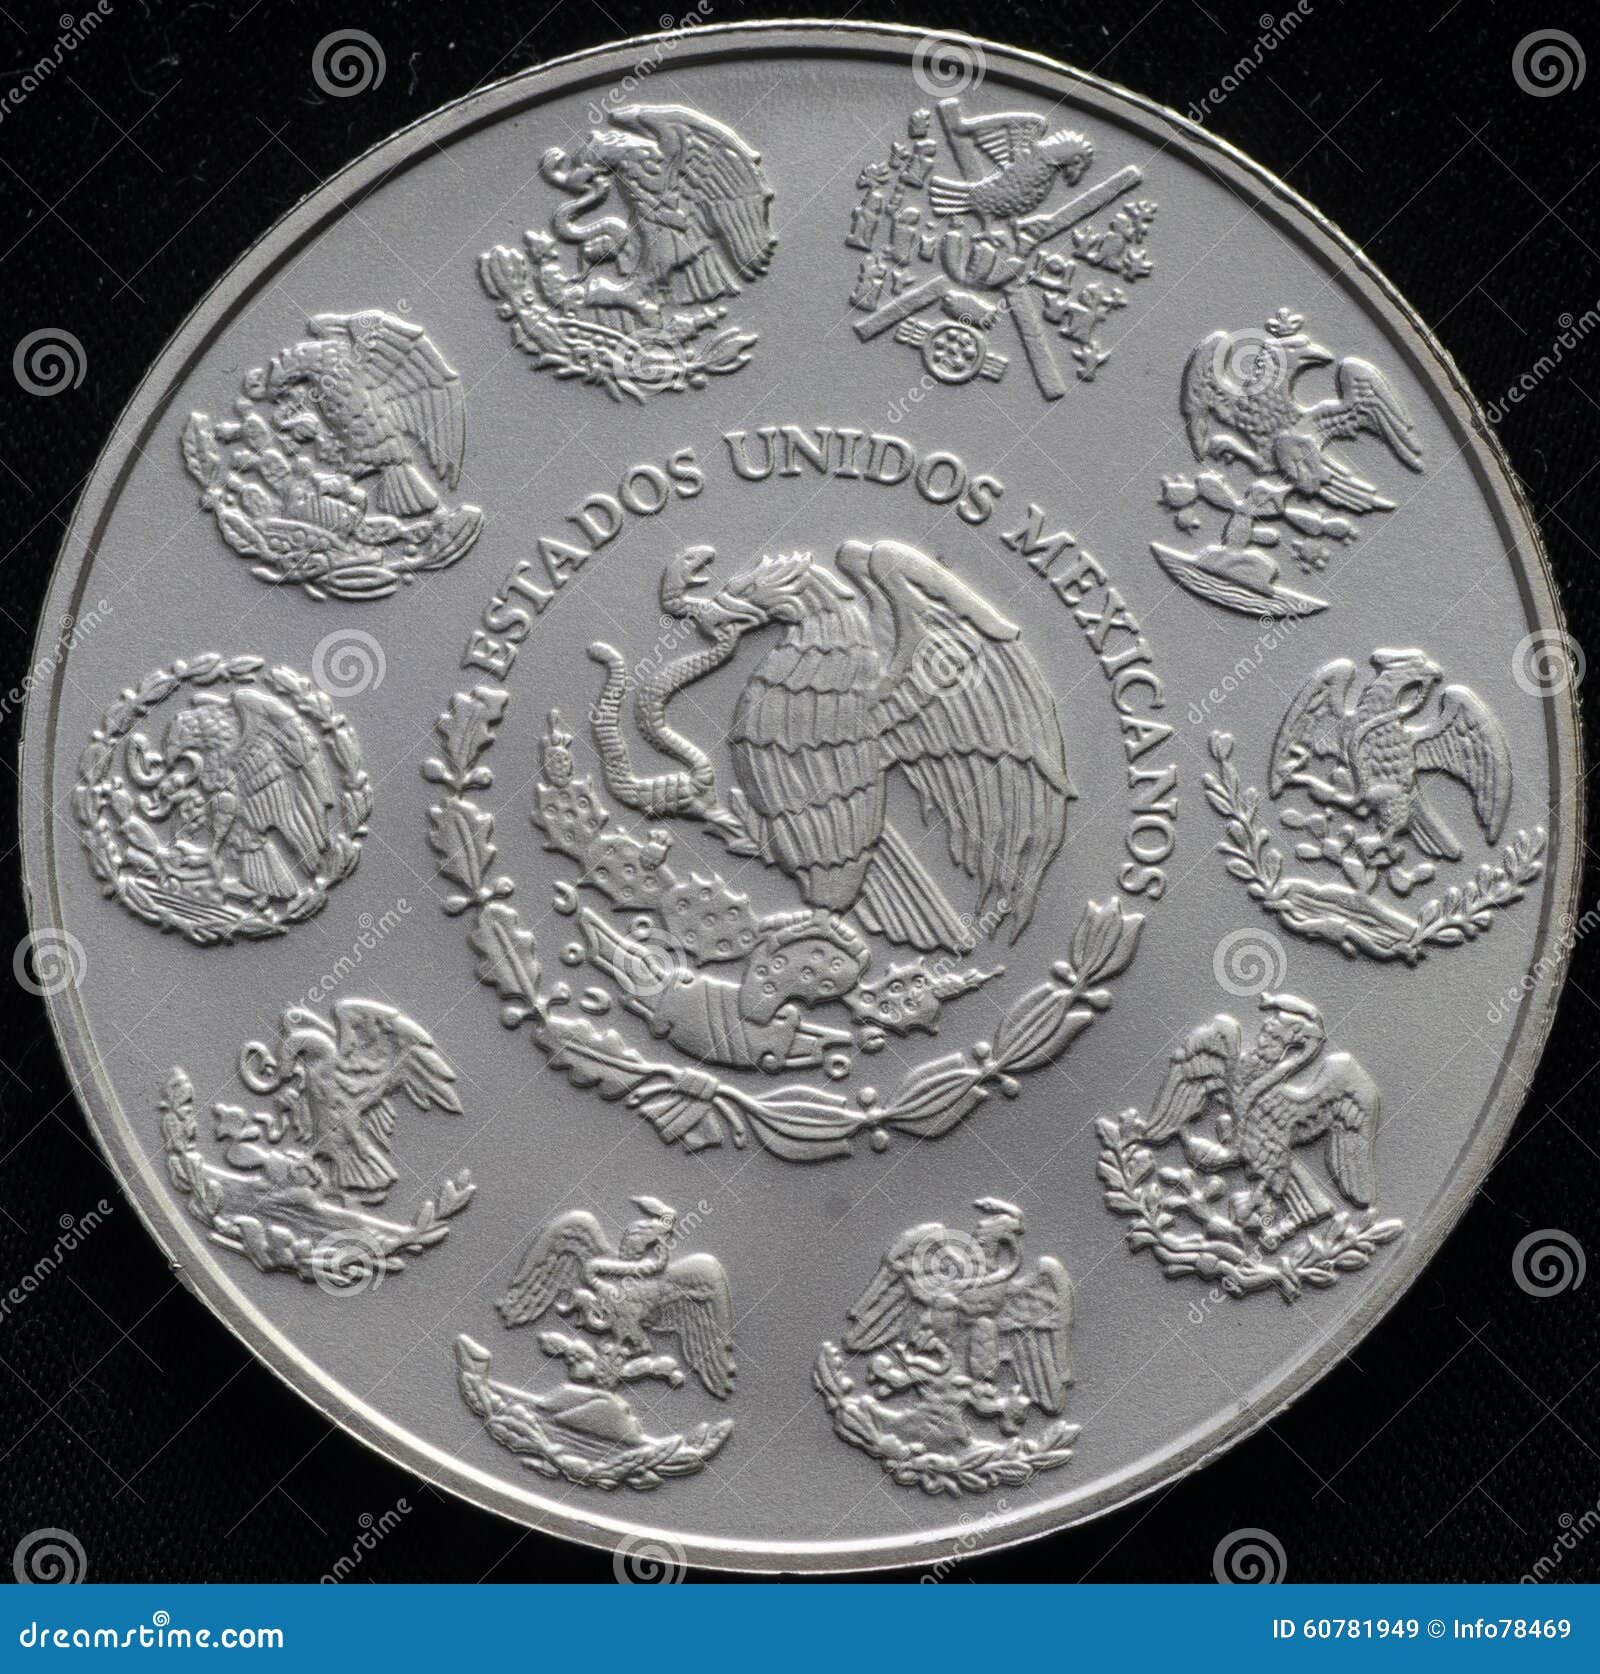 mexican libertad silver coin 1 ounce